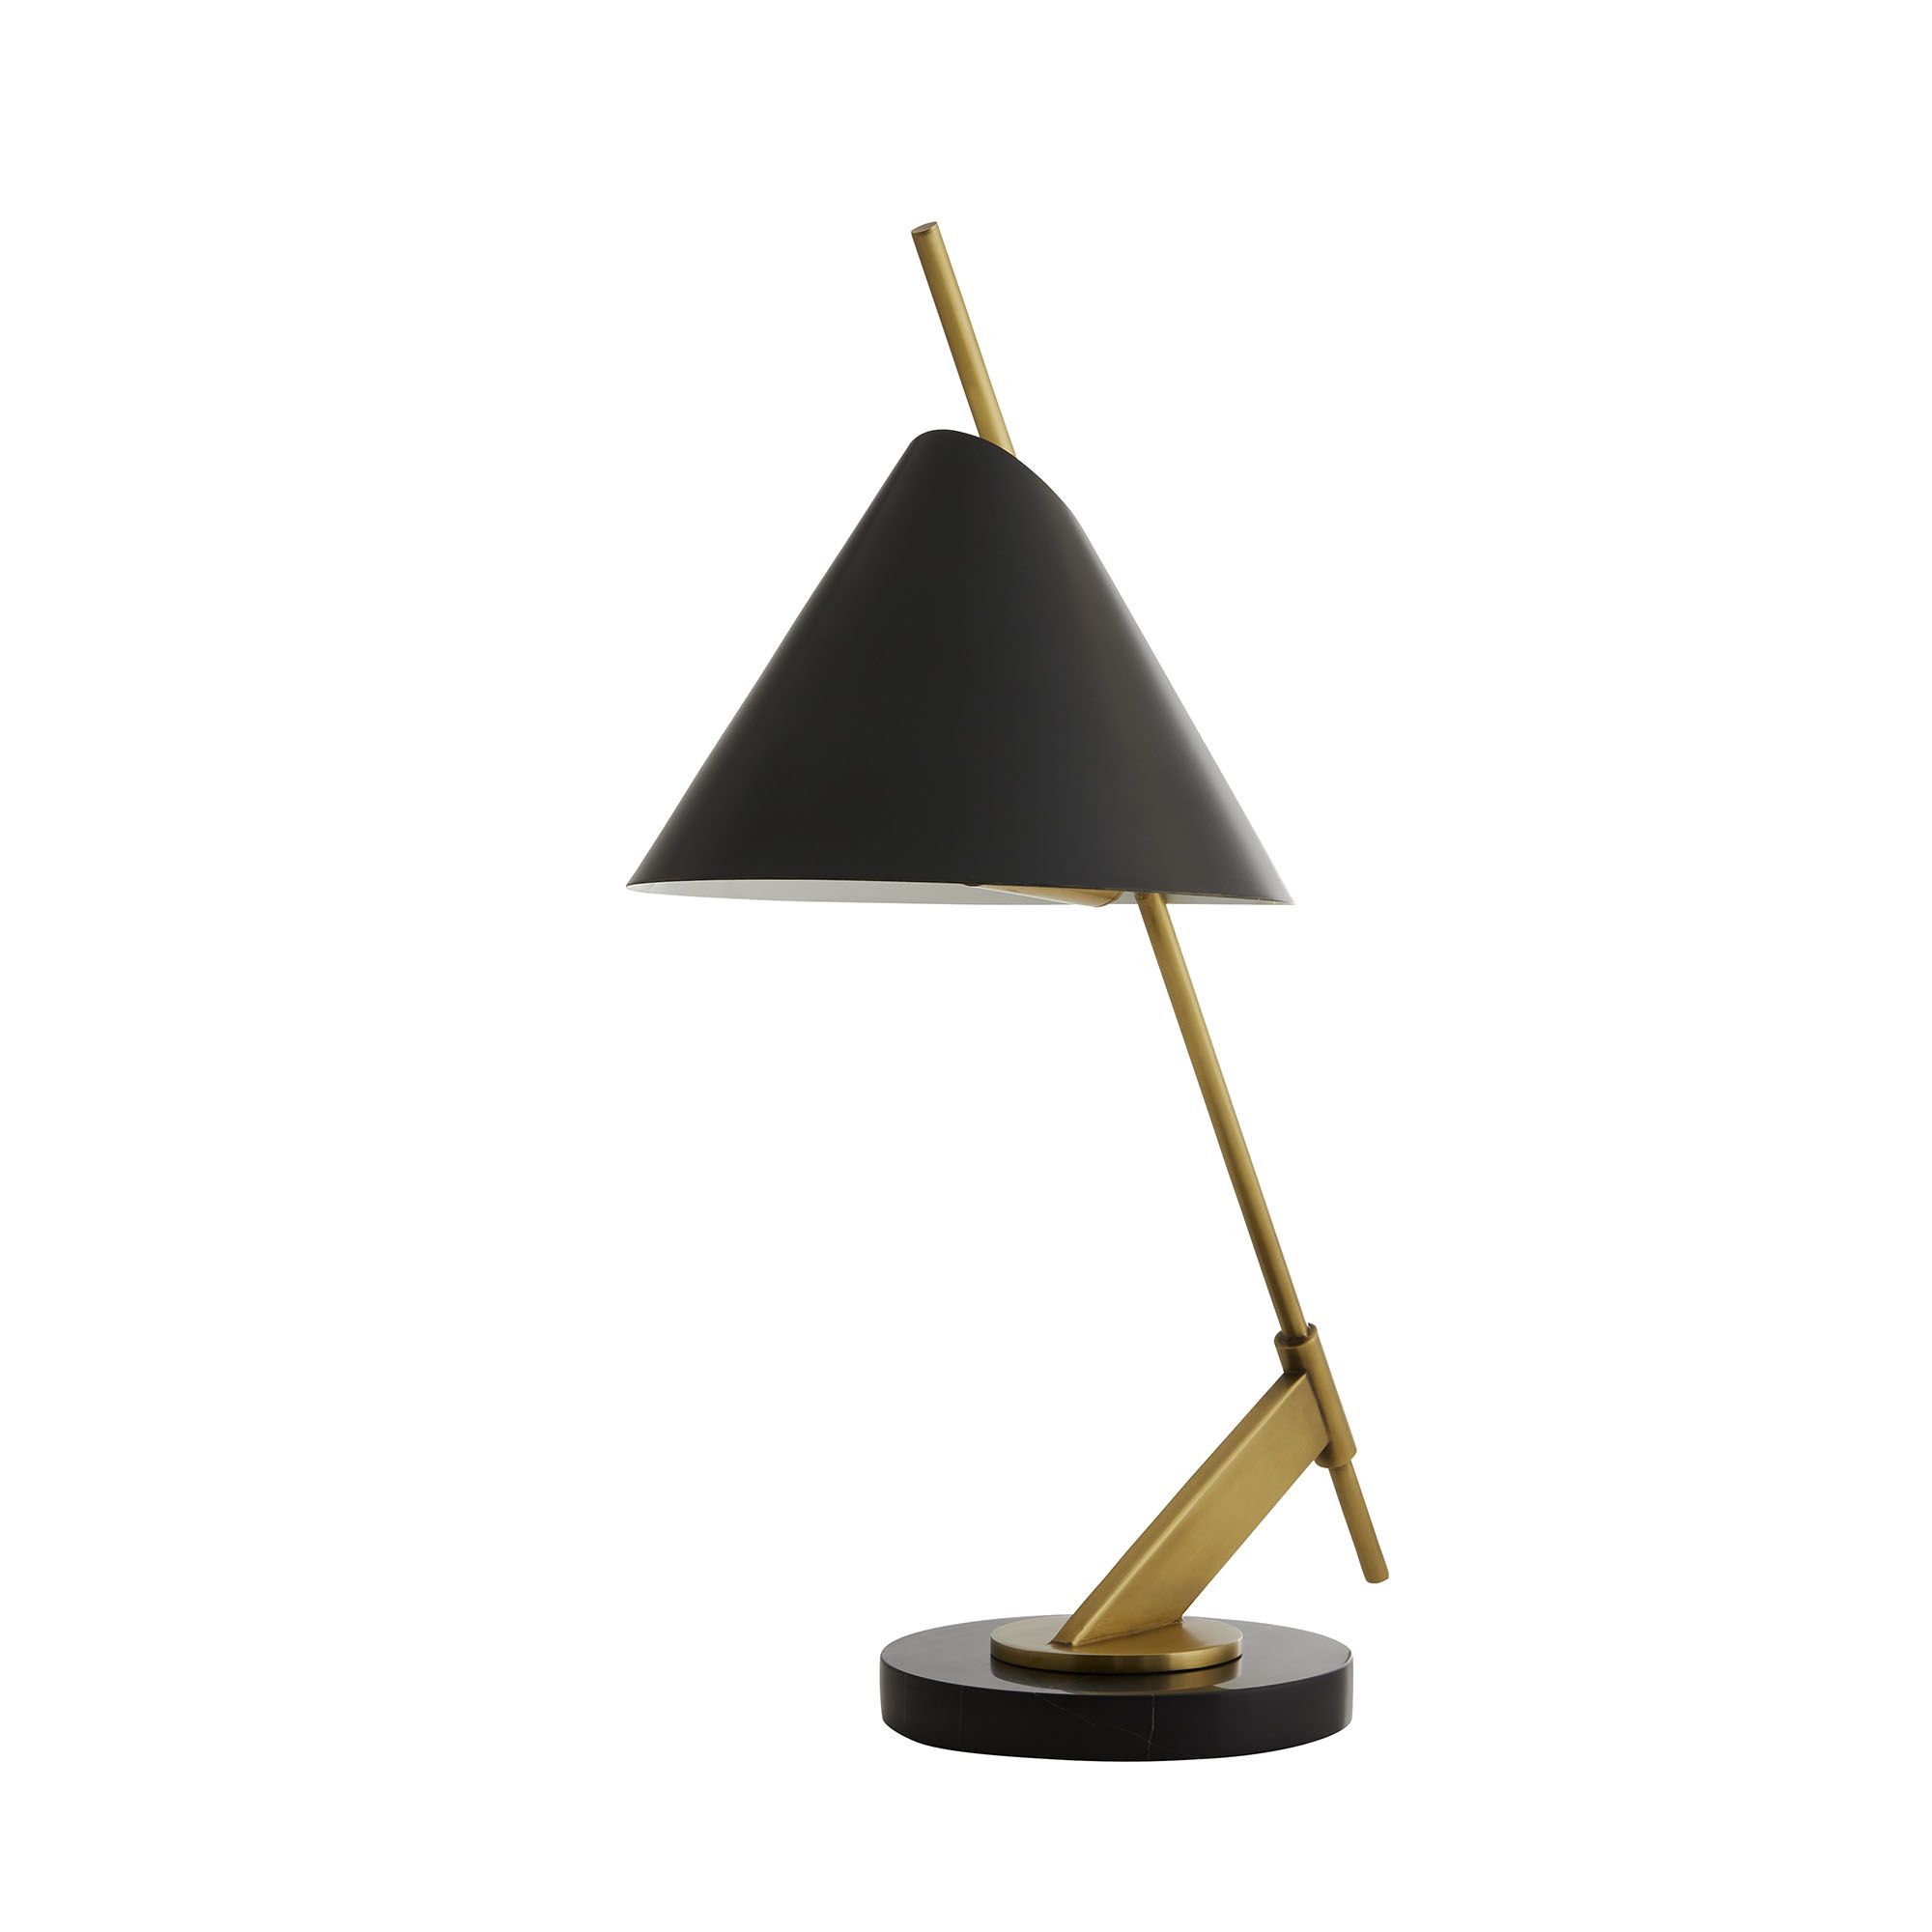 Купить Настольная лампа/Рабочая лампа Jenkins Lamp в интернет-магазине roooms.ru